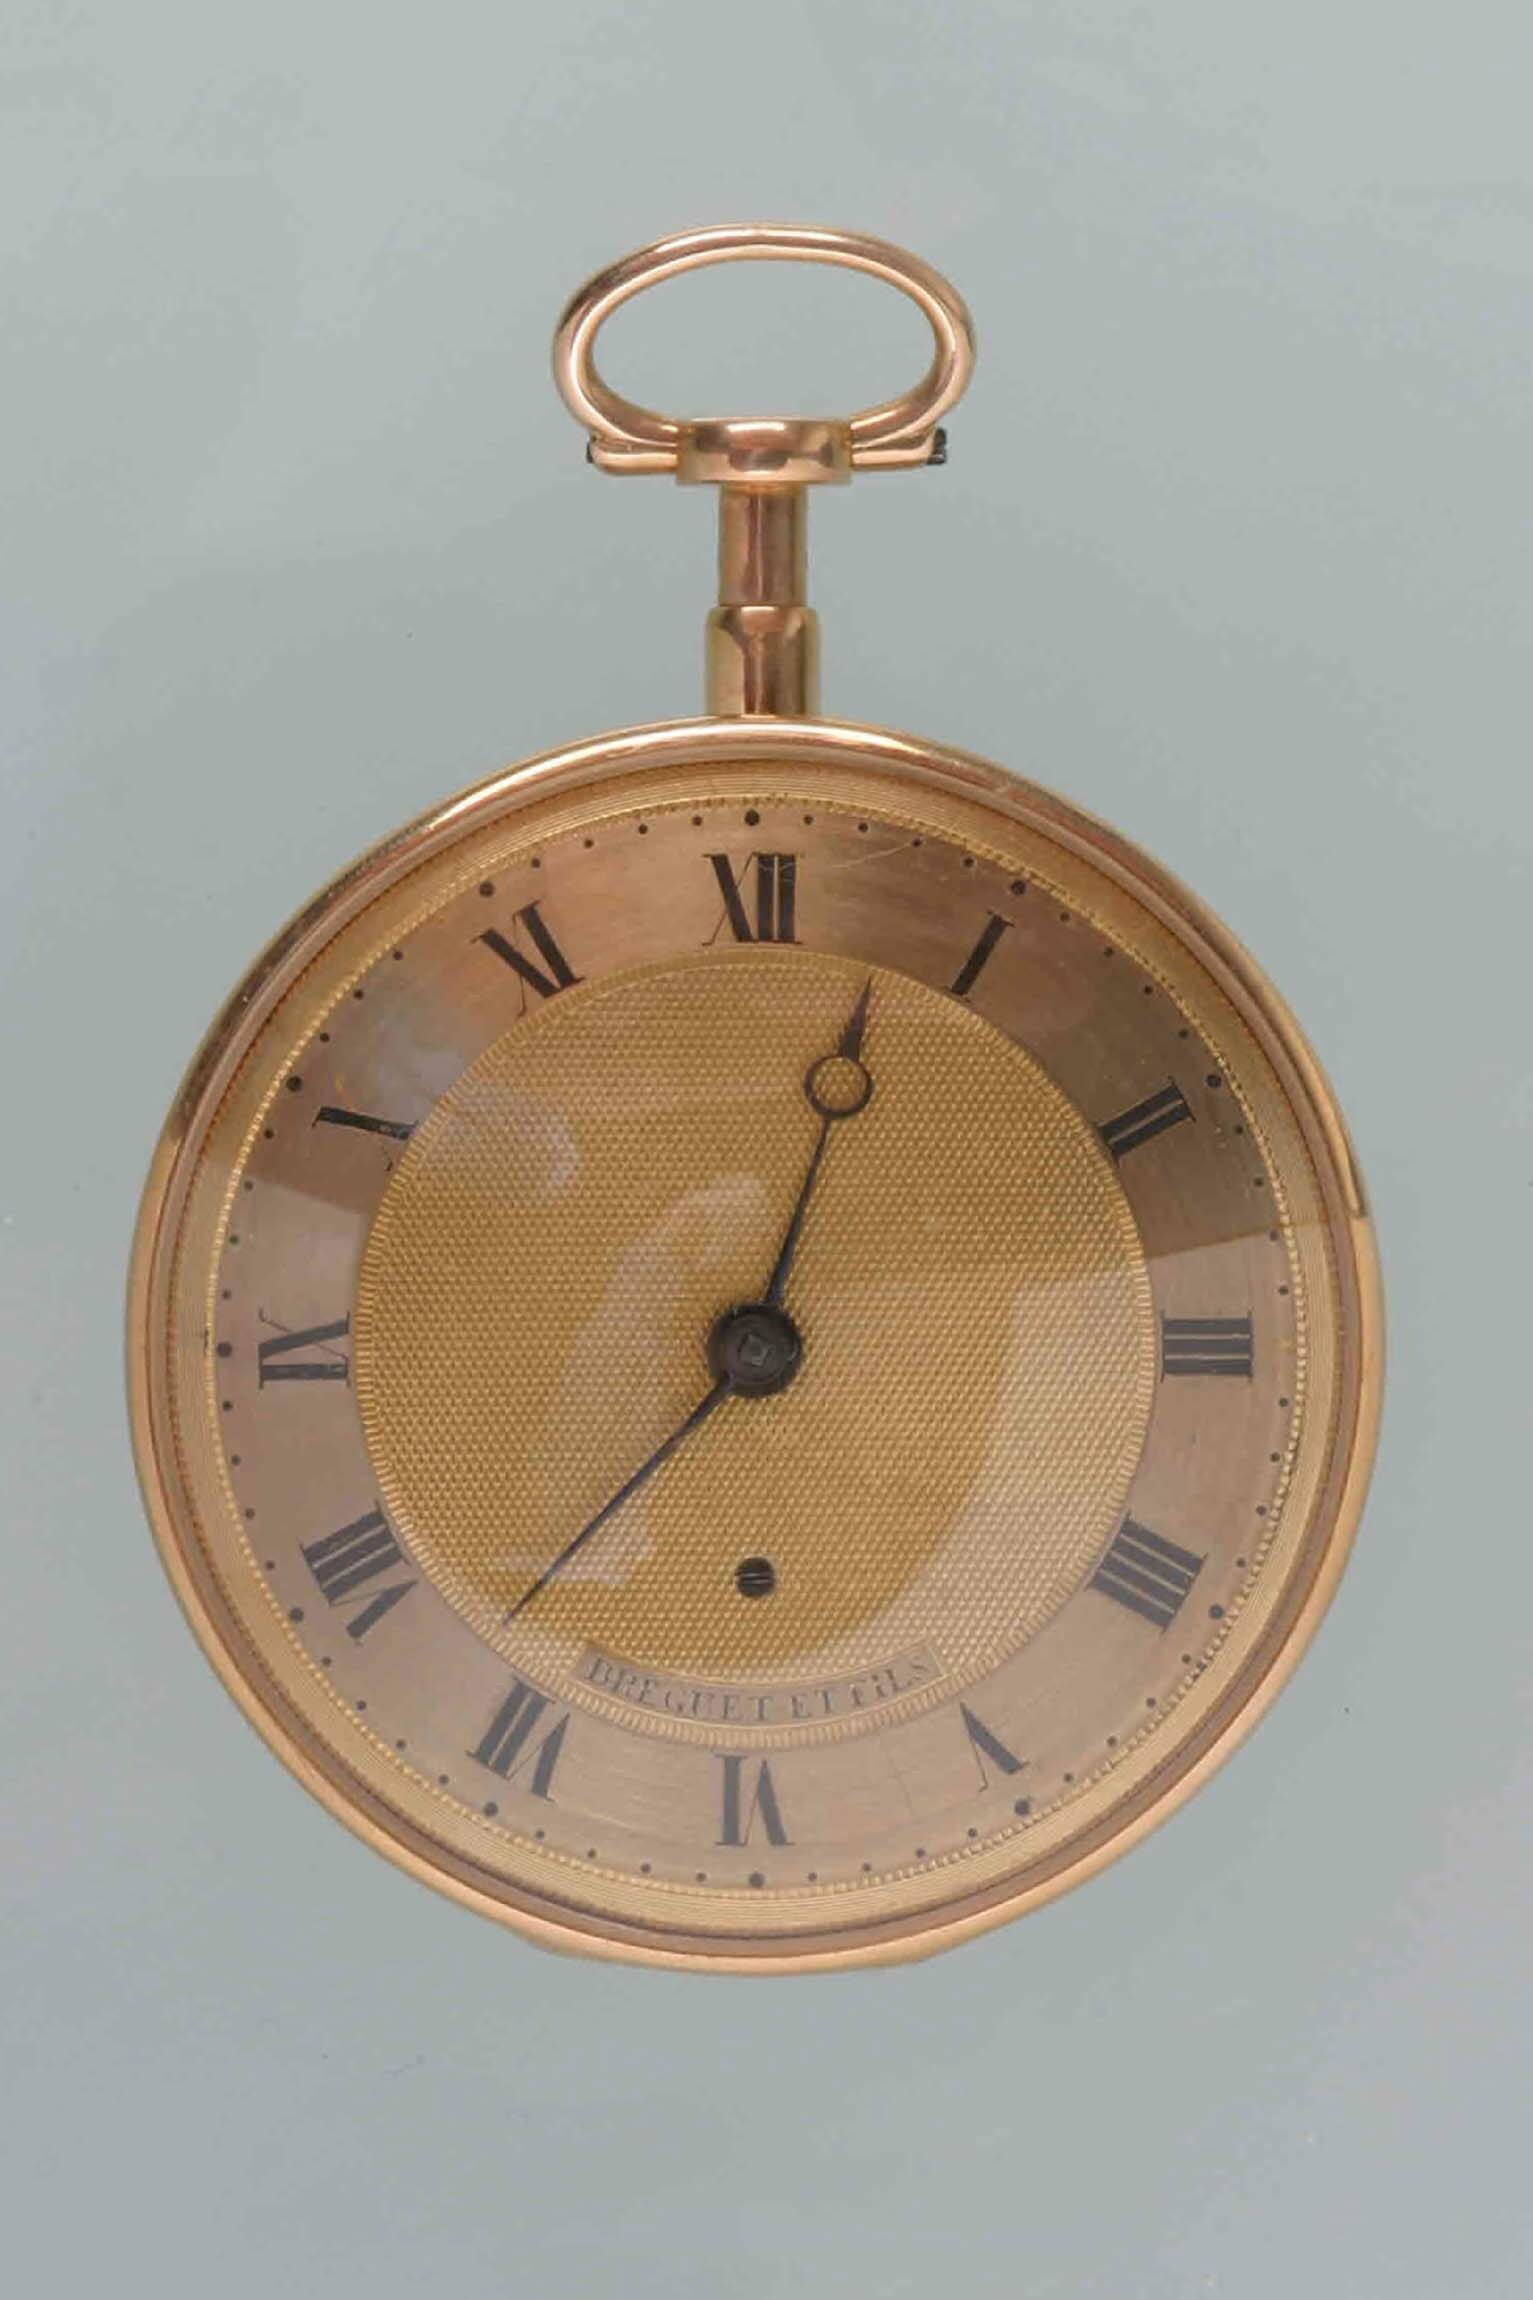 Taschenuhr, Breguet et Fils, Paris, um 1820 (Deutsches Uhrenmuseum CC BY-SA)